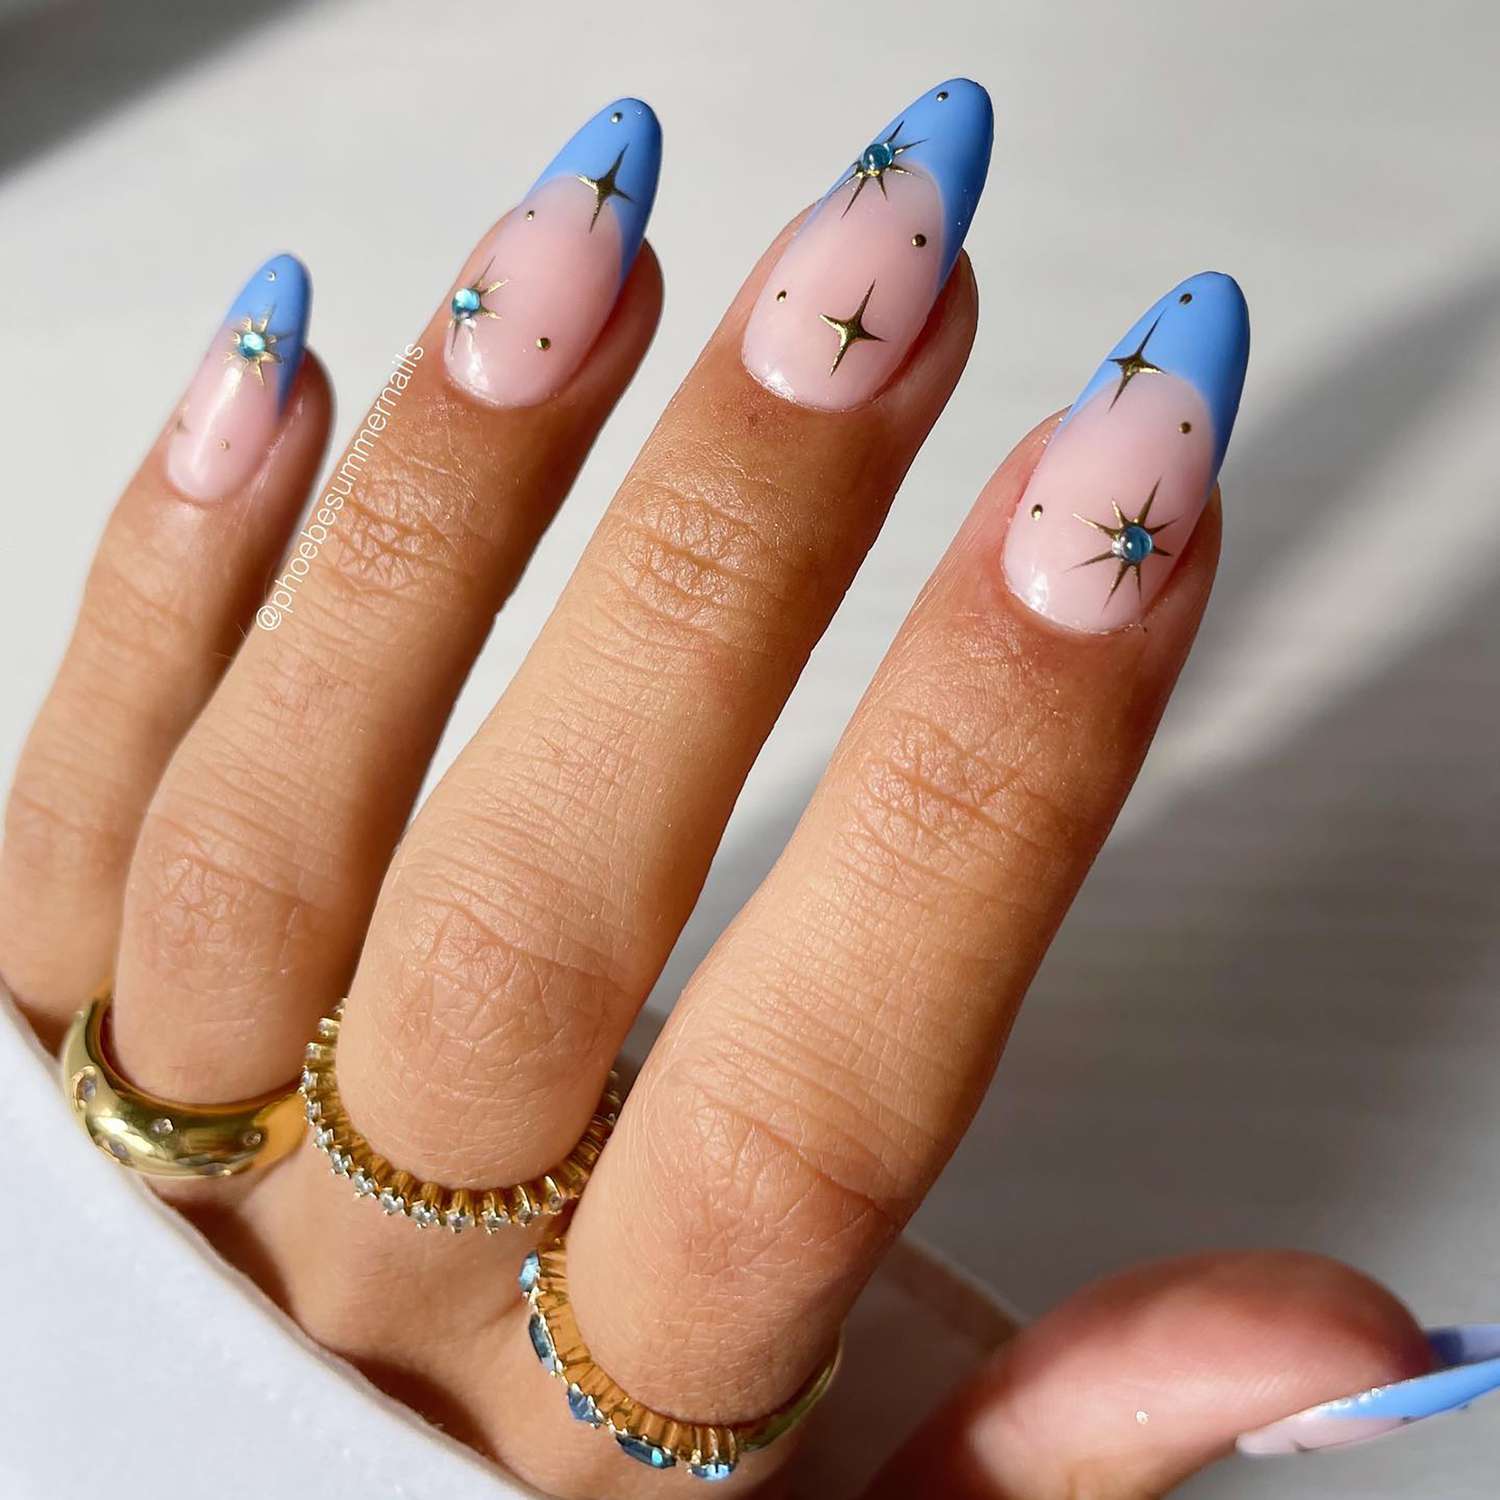 Uma manicure fechada com dicas francesas azuis e detalhes celestiais